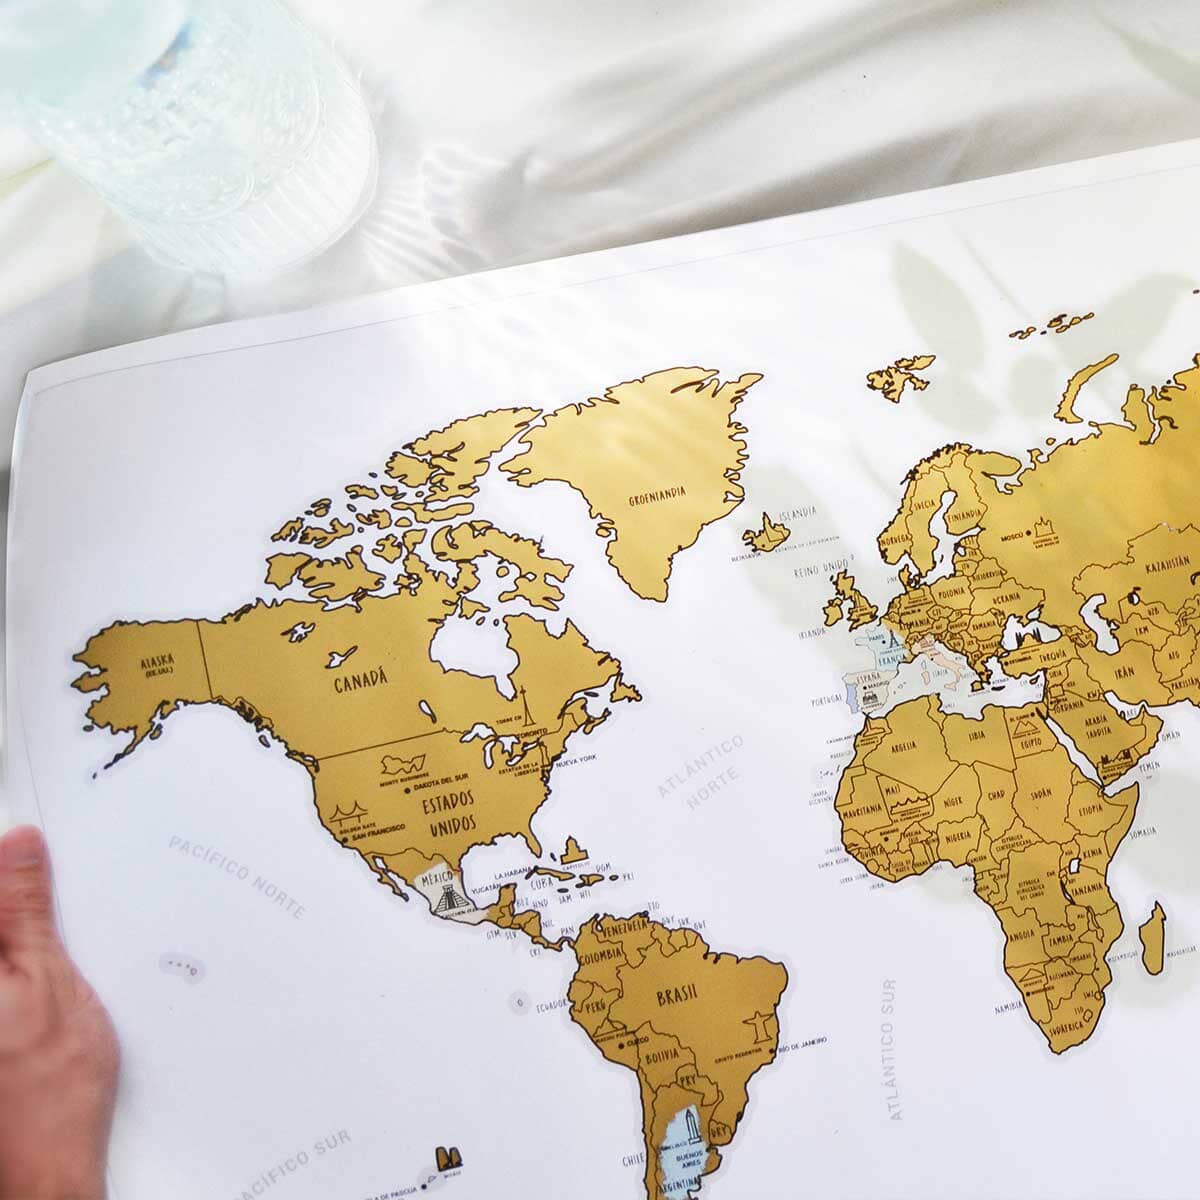 Mapa Raspable del Mundo Mapa raspable La Fiebre de Viajar 